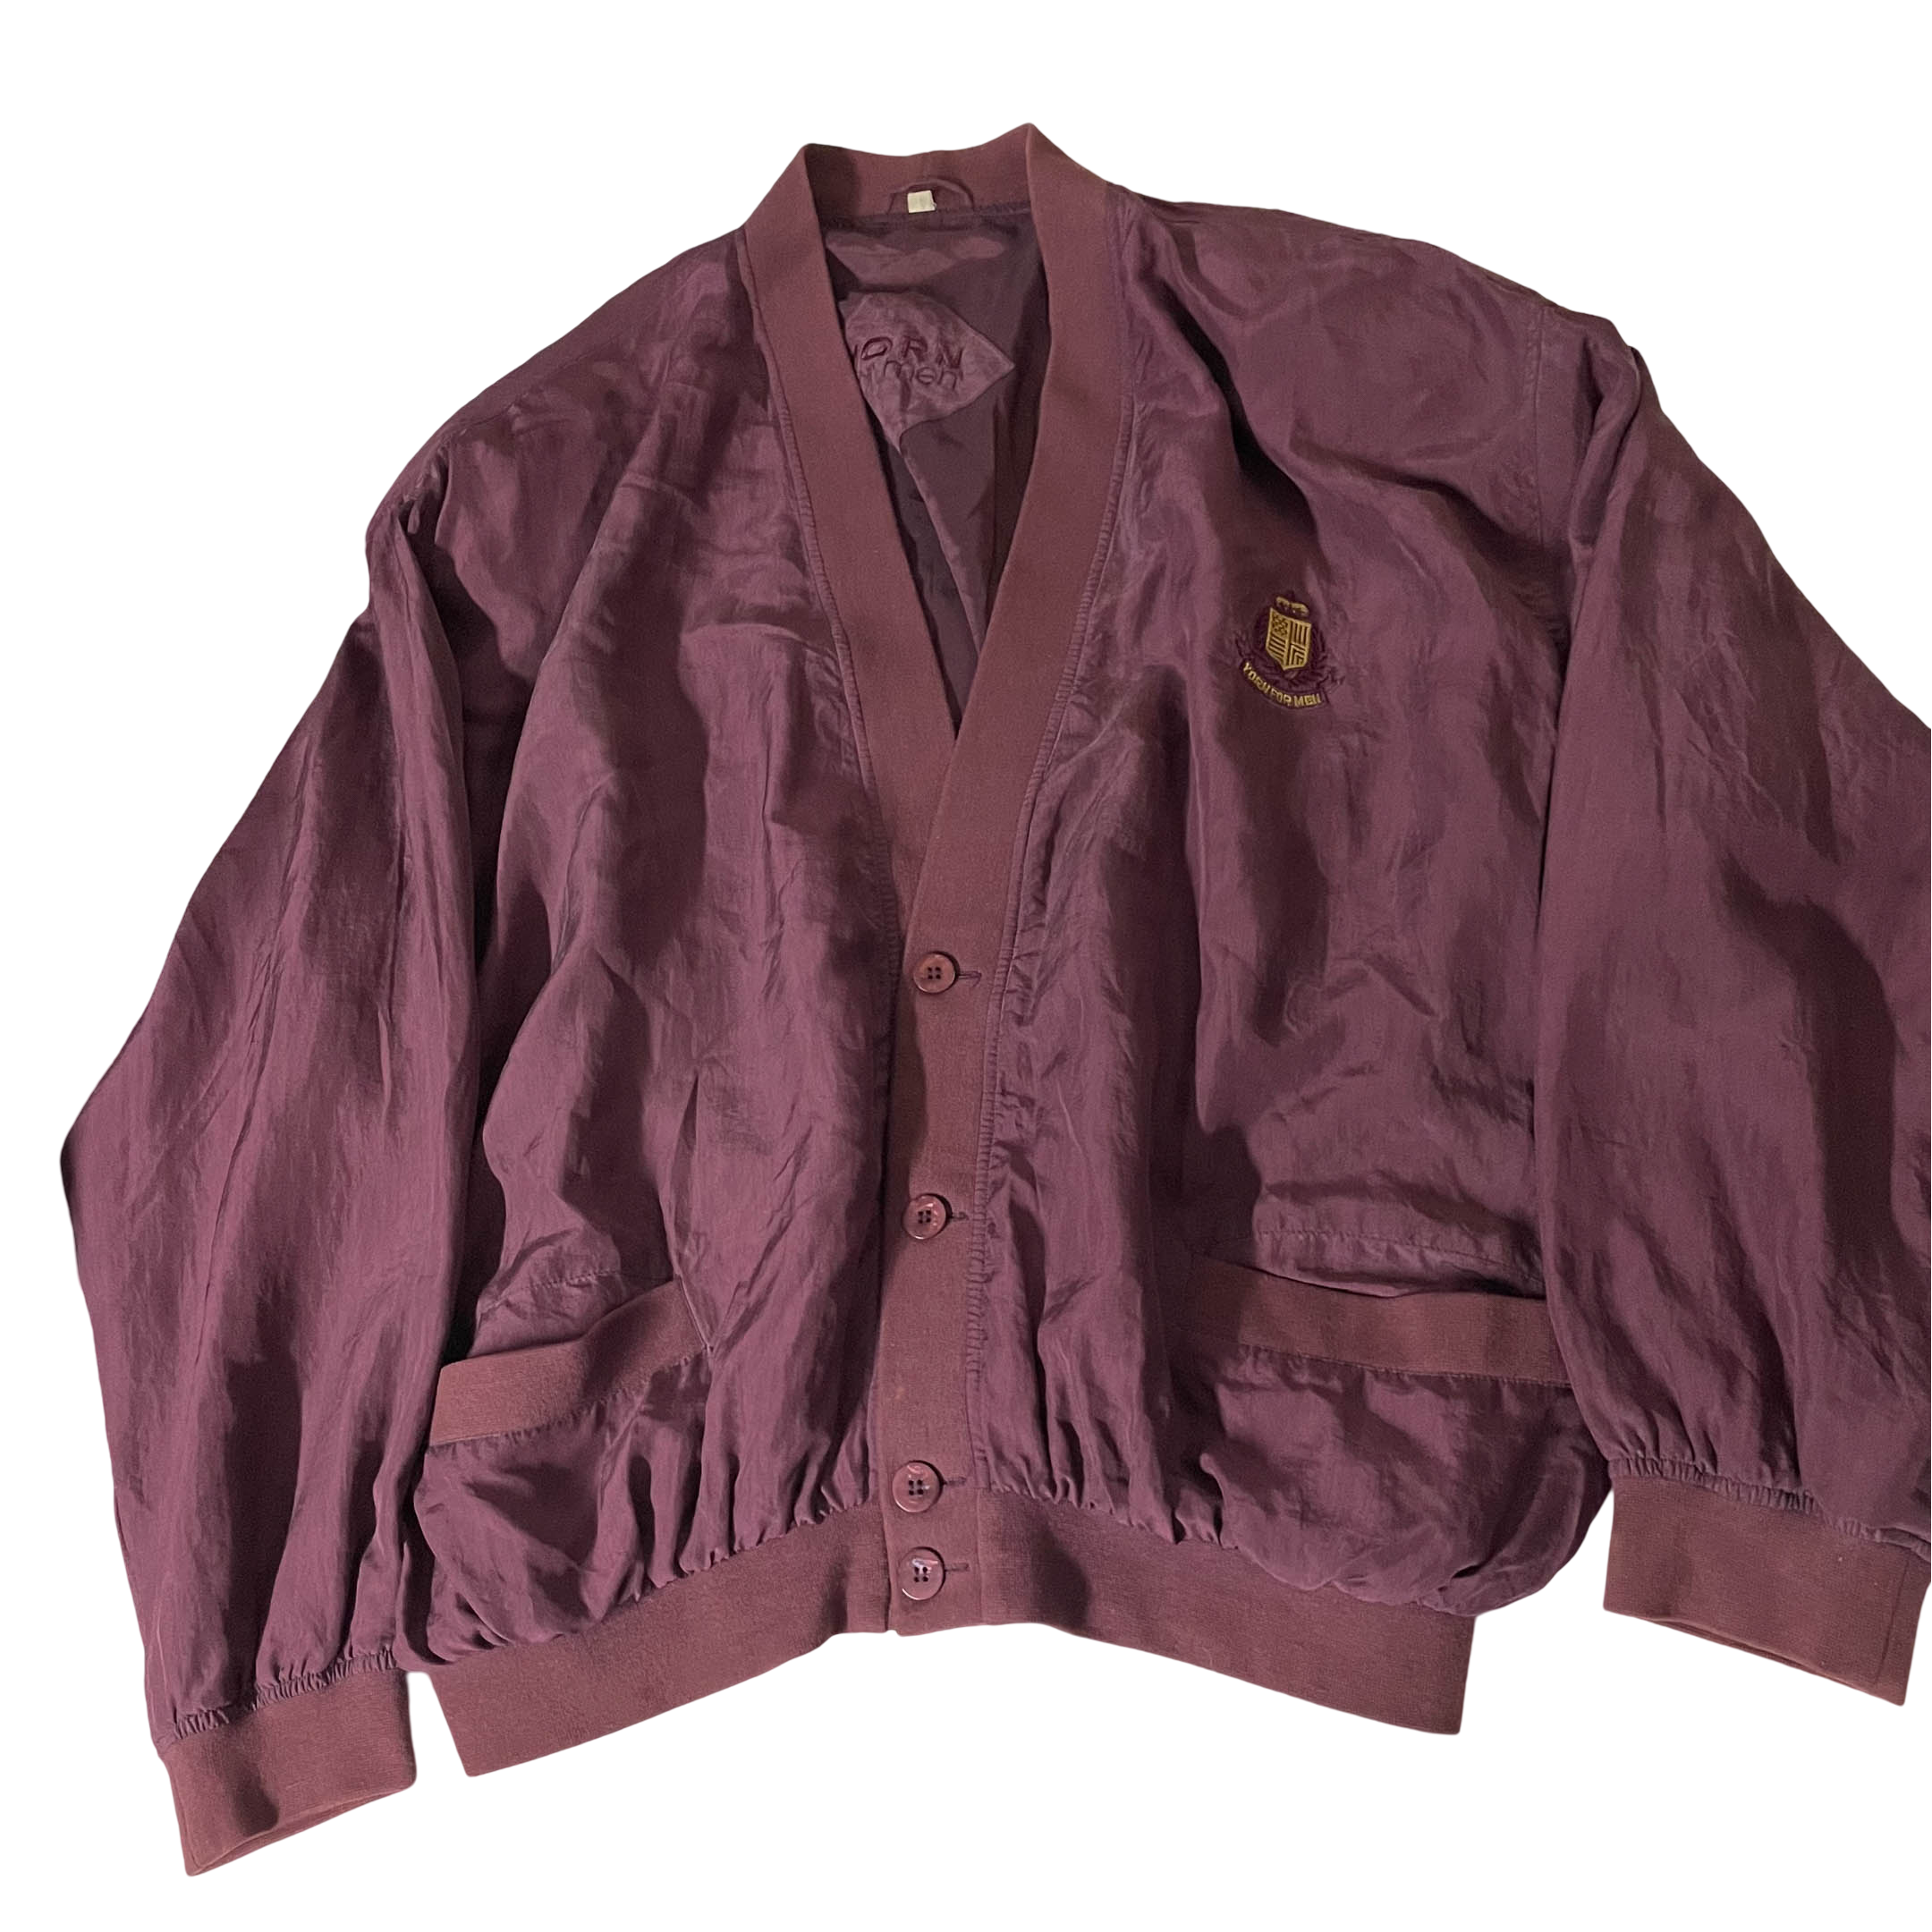 Vintage Yorn for men Nylon wine button up V-neck large bomber jacket